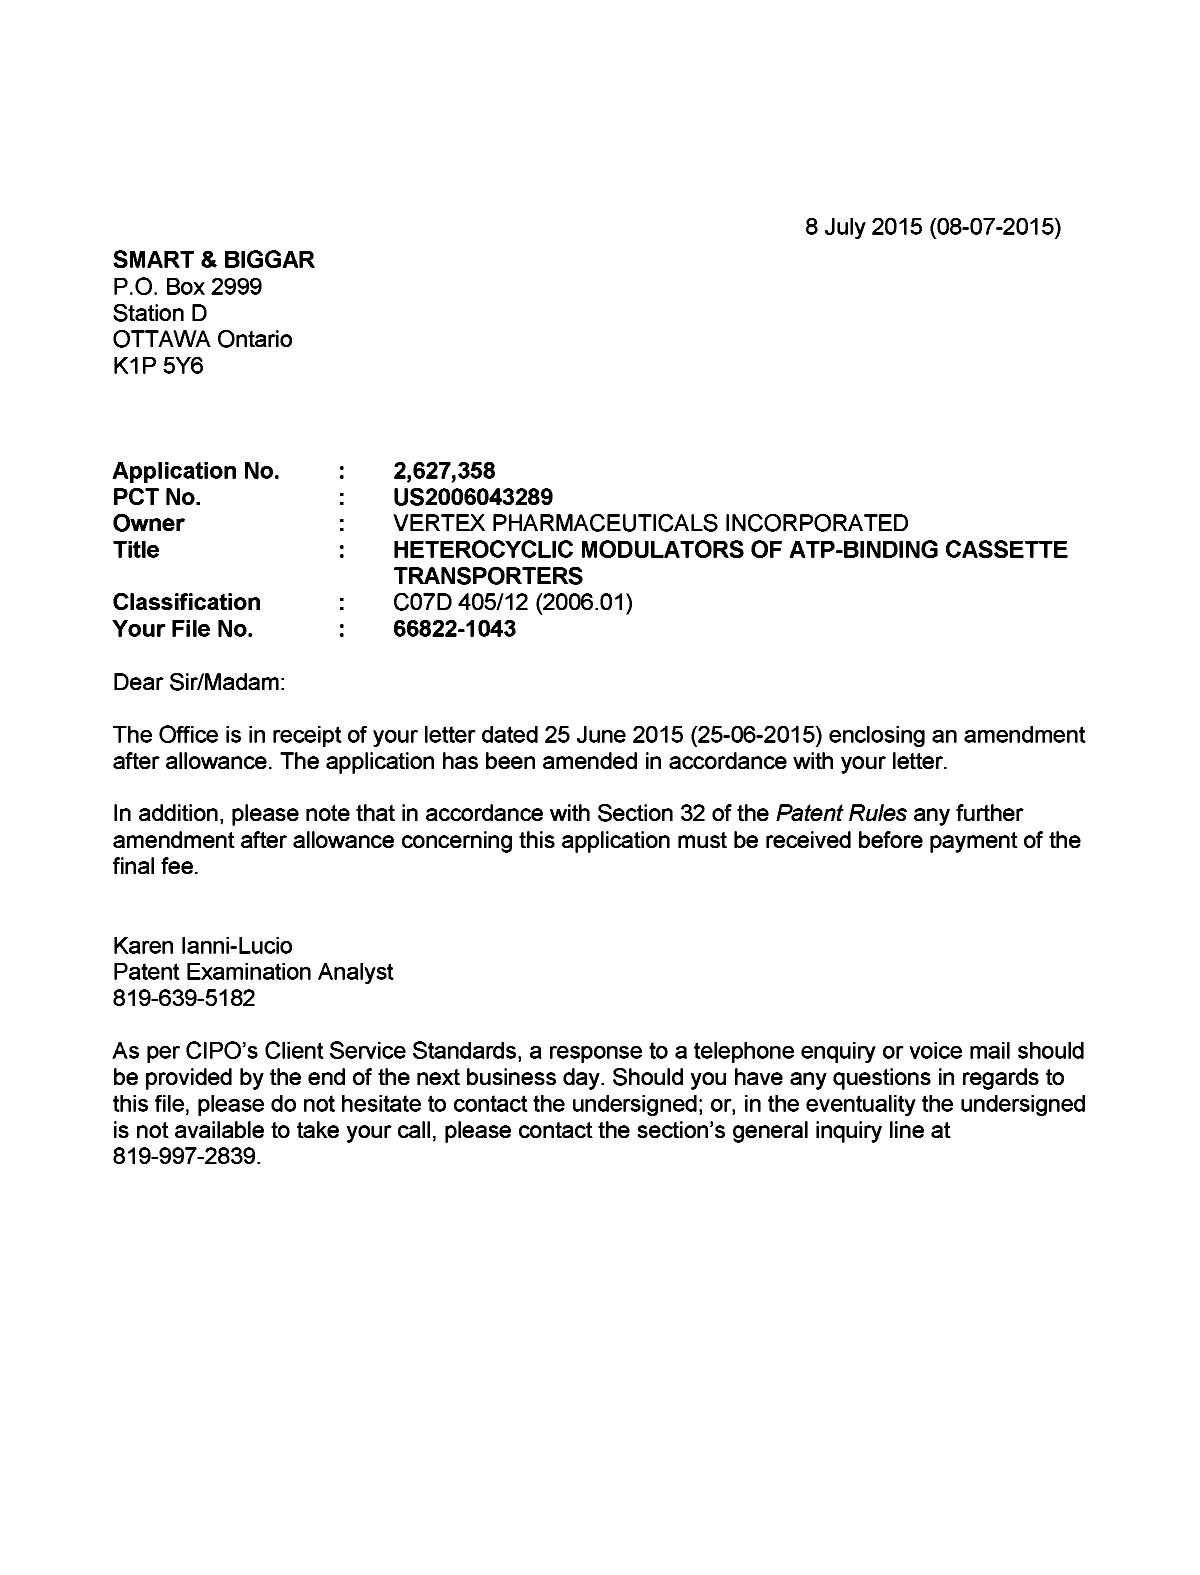 Document de brevet canadien 2627358. Poursuite-Amendment 20150708. Image 1 de 1